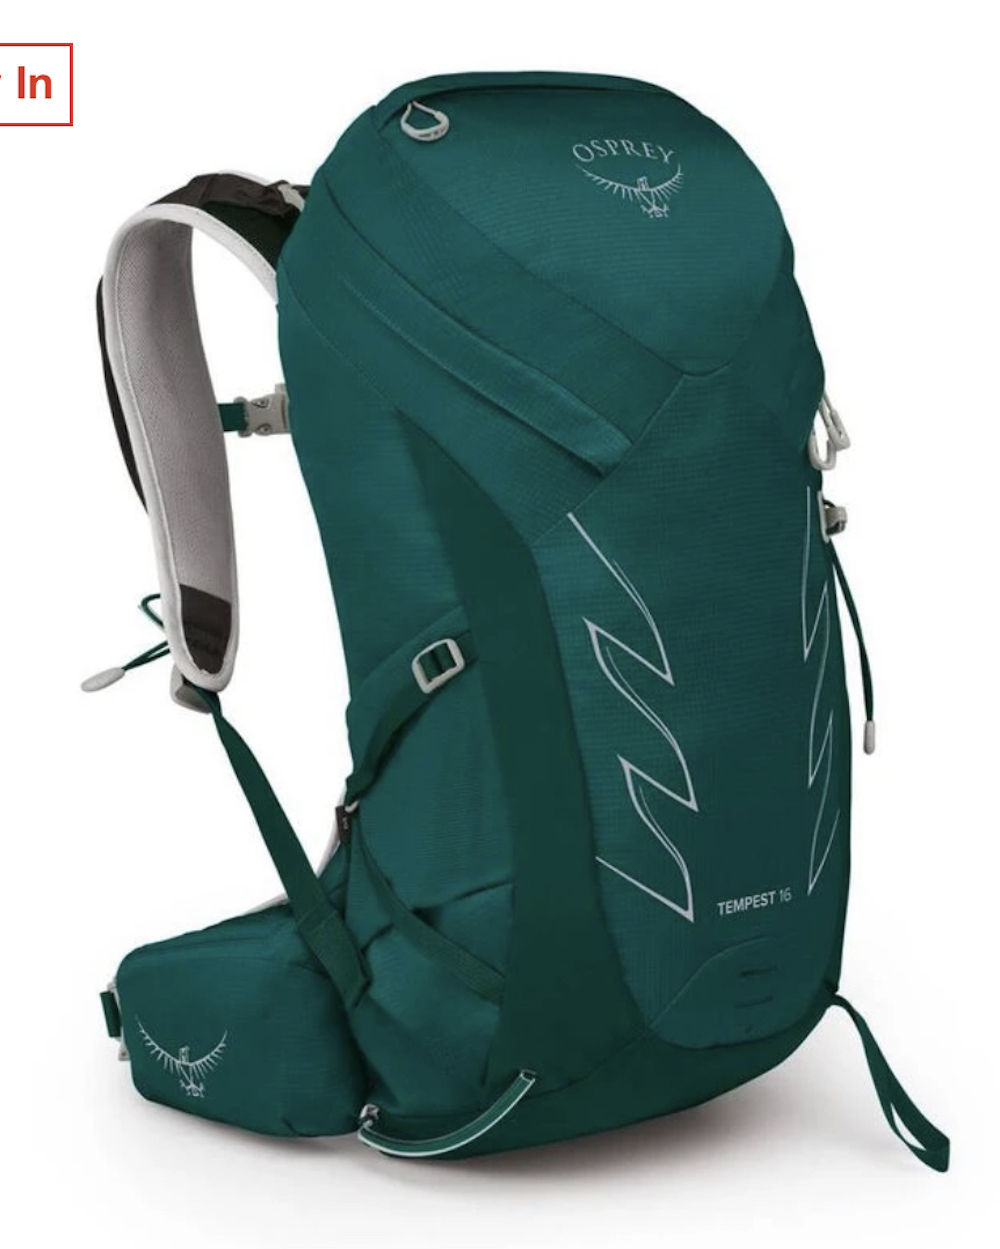 Osprey backpack for hiking